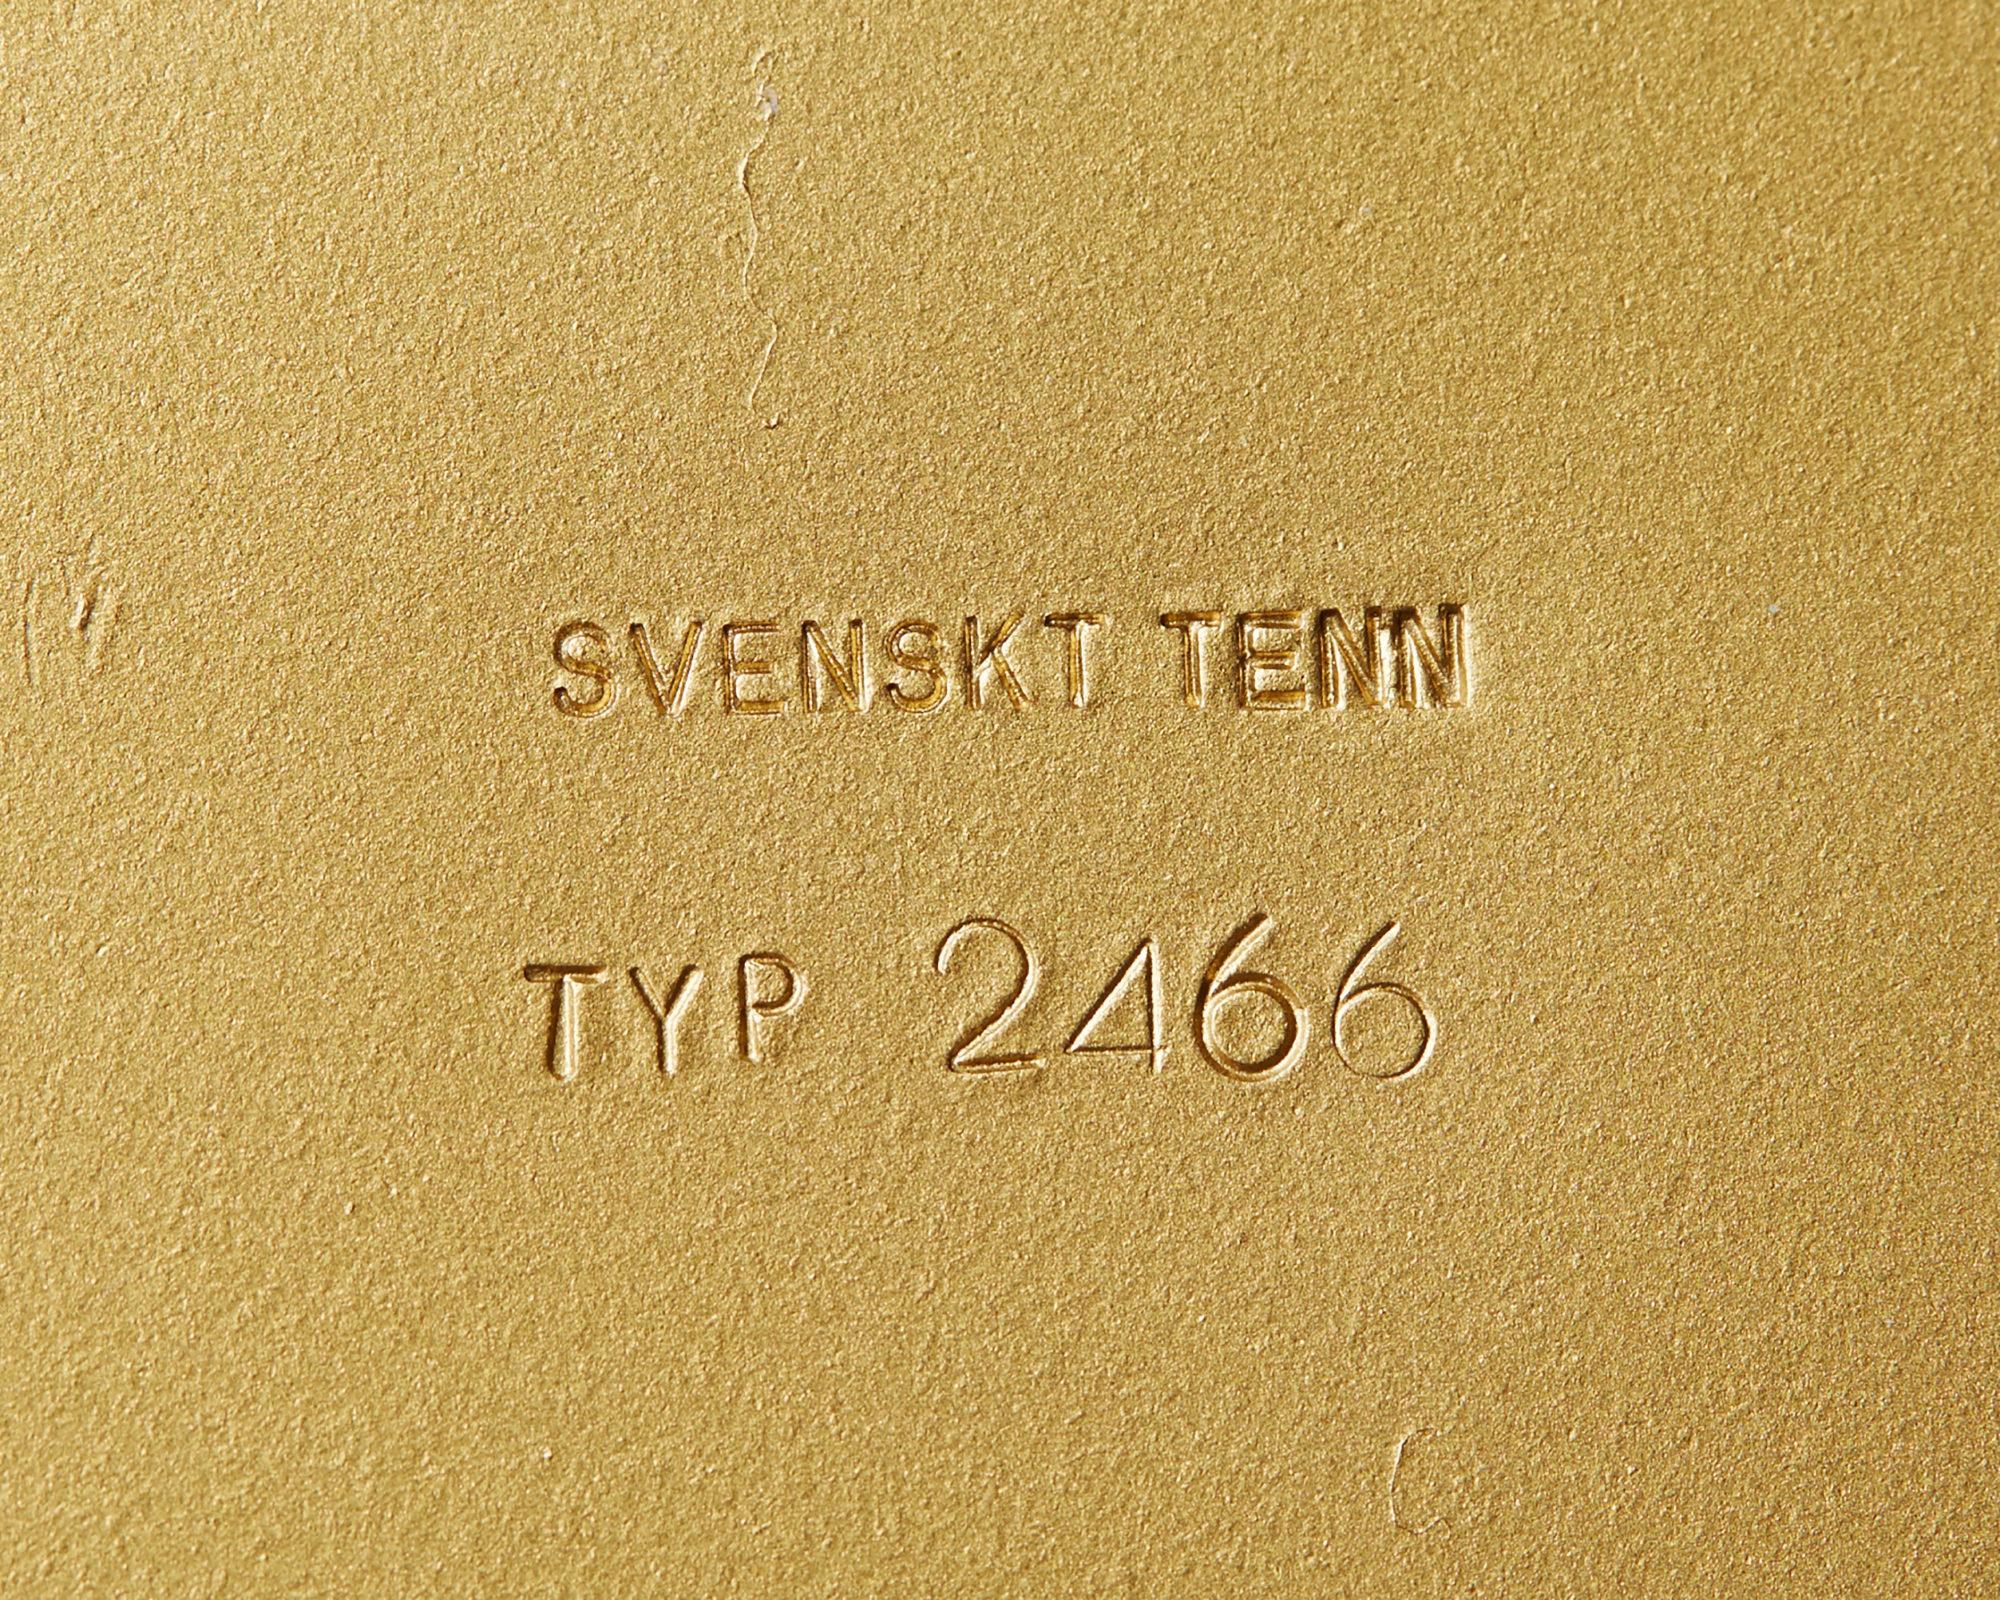 Swedish Table Lamp Model 2466 Designed by Josef Frank for Svenskt Tenn, Sweden, 1950s